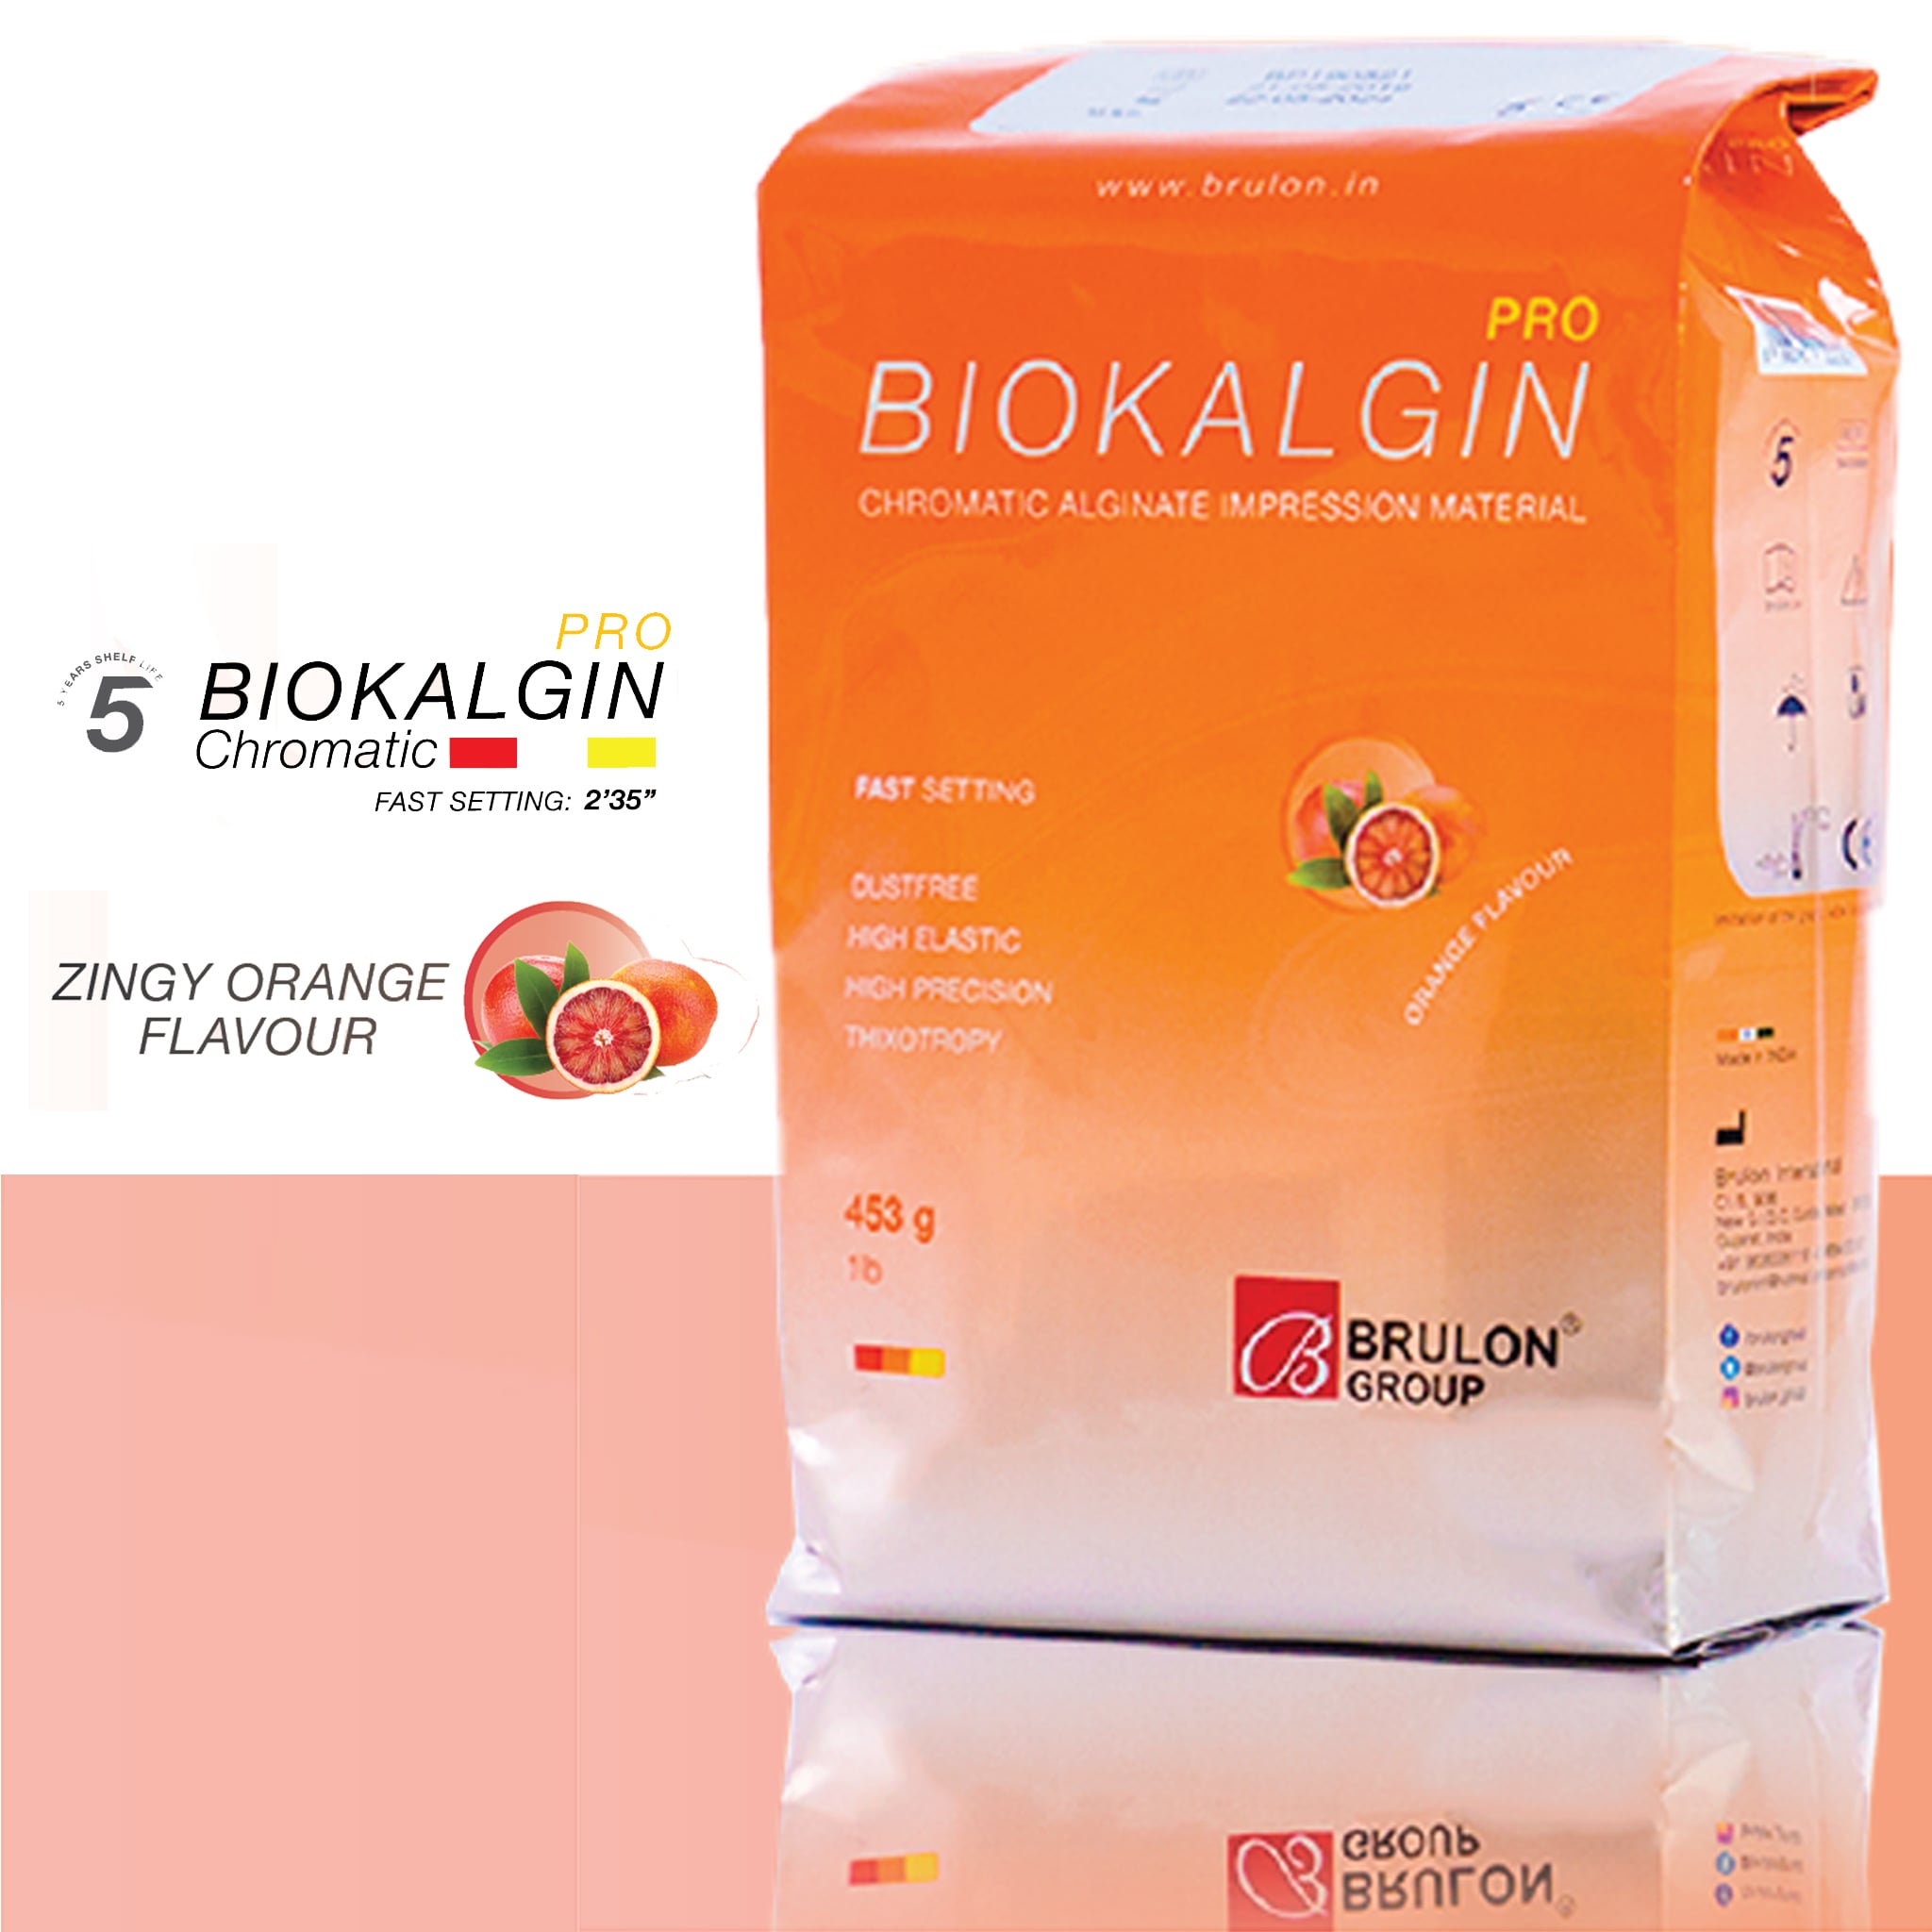 Brulon Biokalgin Pro Chromatic Alginate